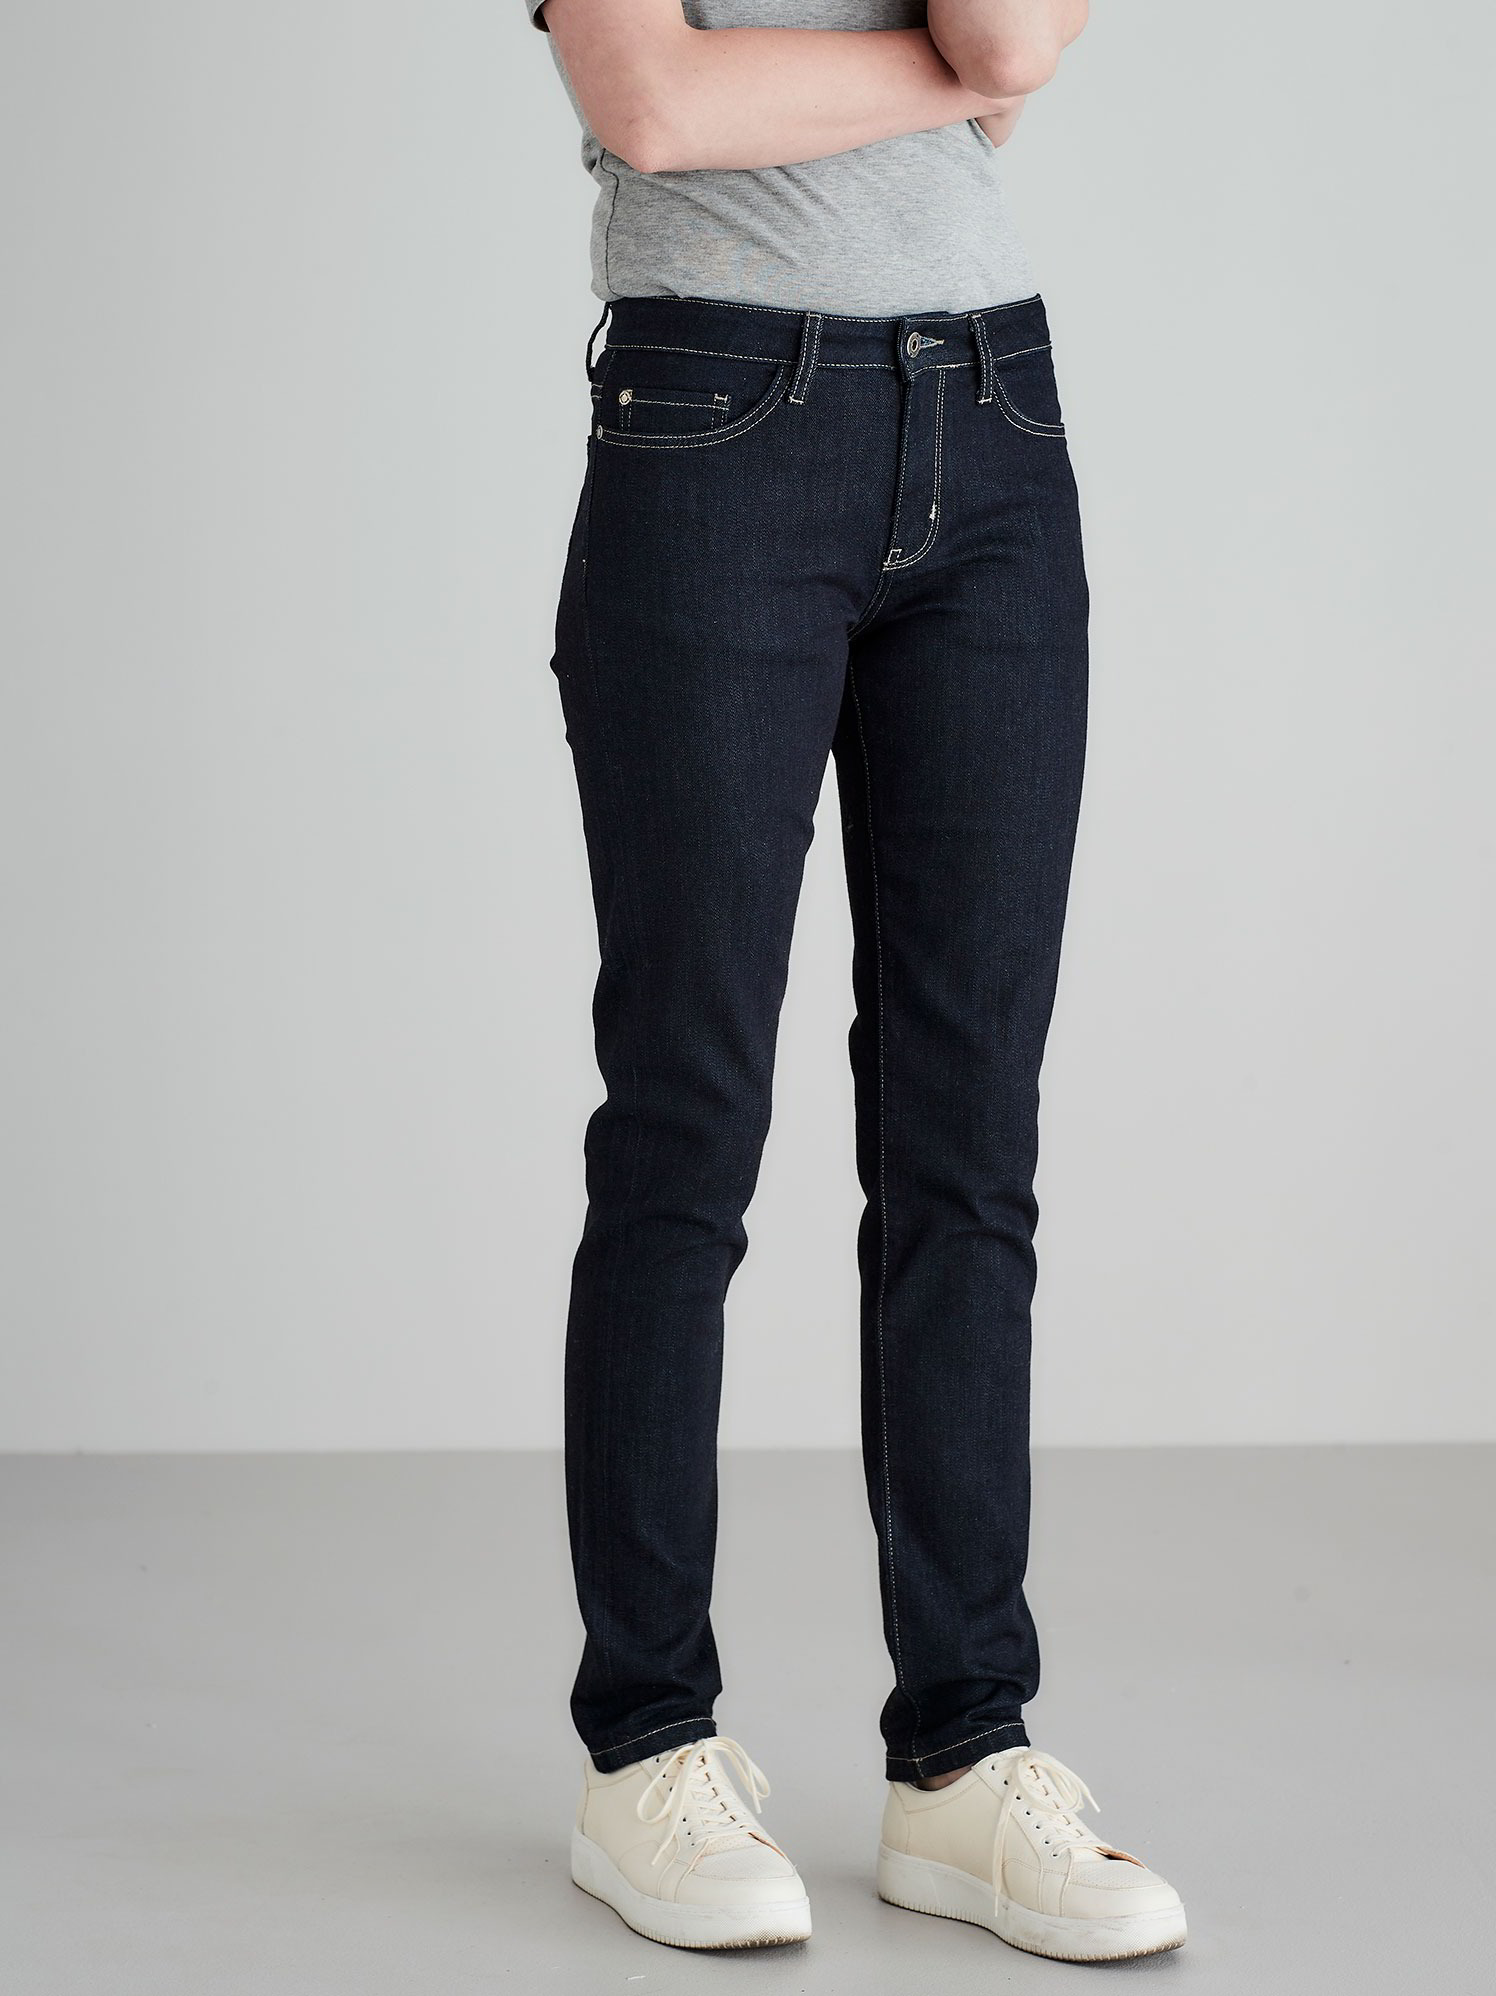 Jeans-Skinny, 36 dark denim